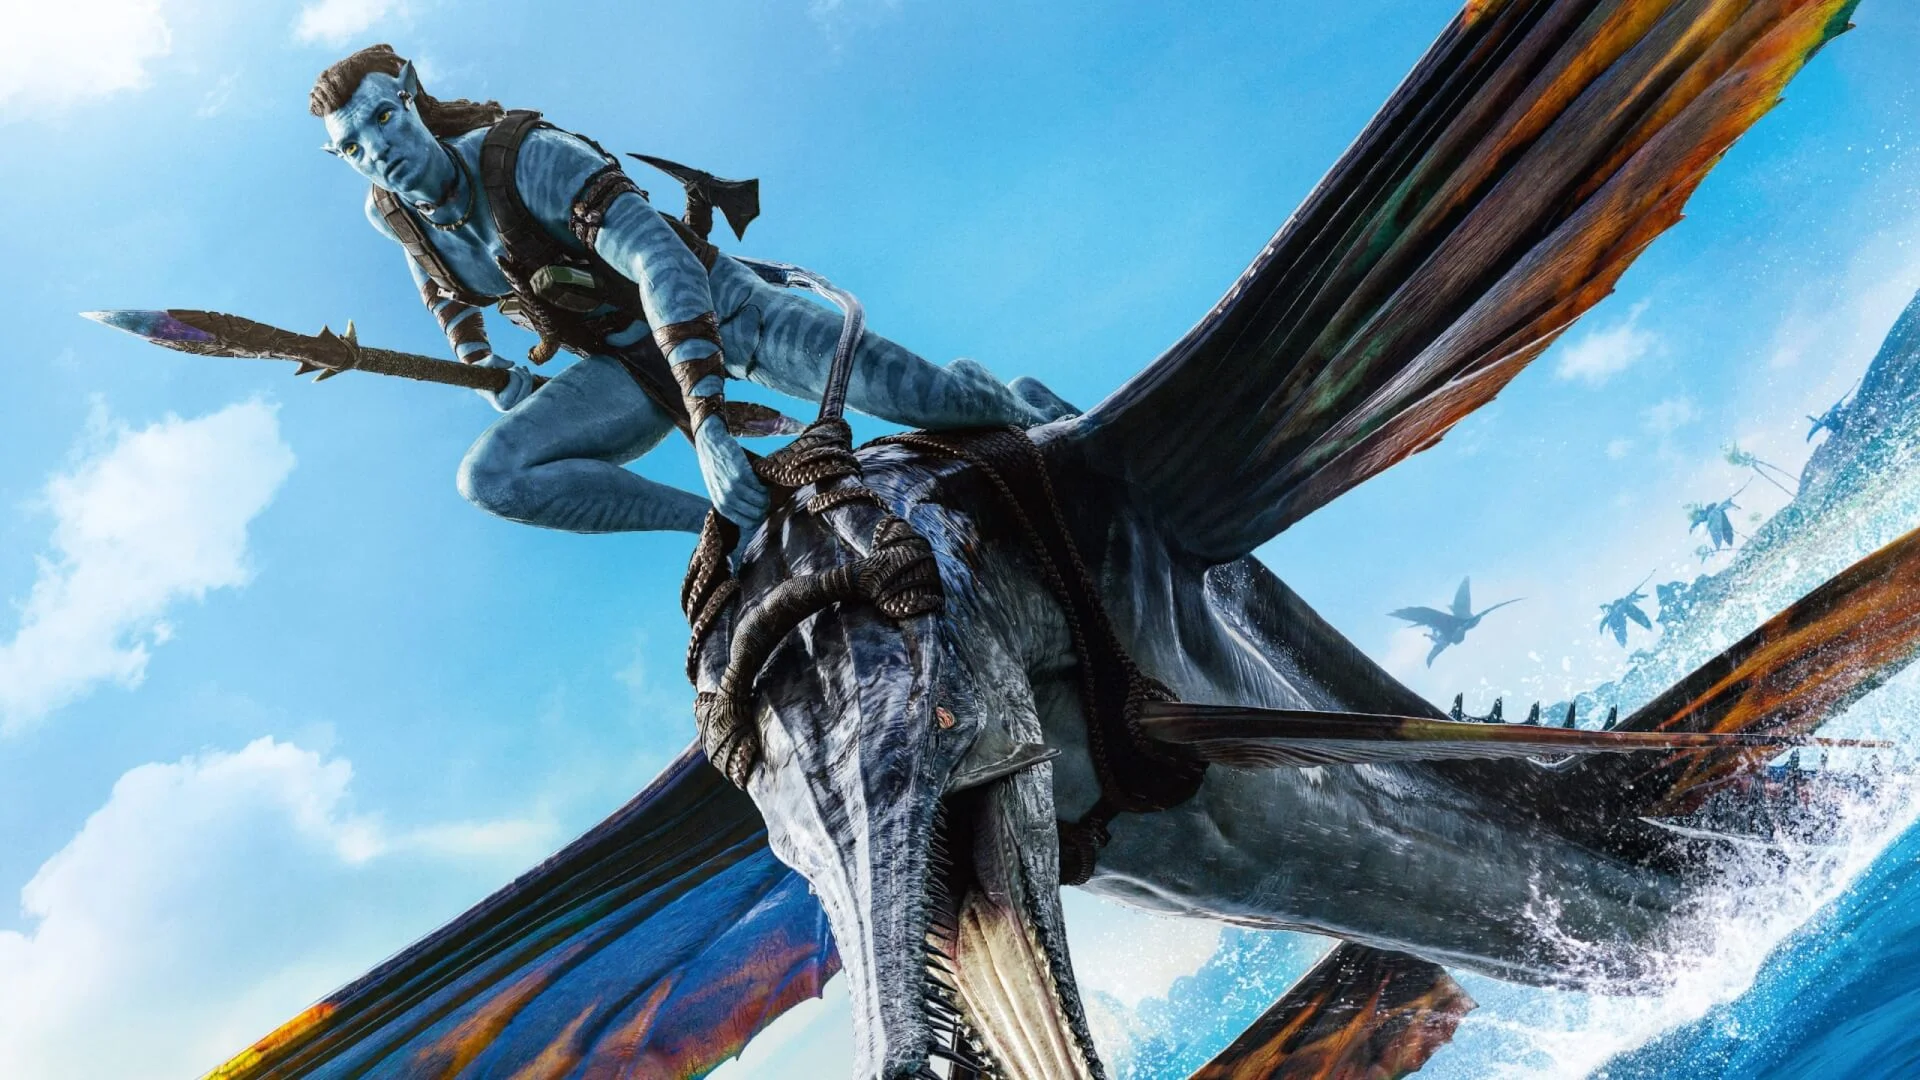 James Cameron felvetette, hogy az Avatar folytatásainak bemutatói között akár nagyobb szünetet is tarthattak volna